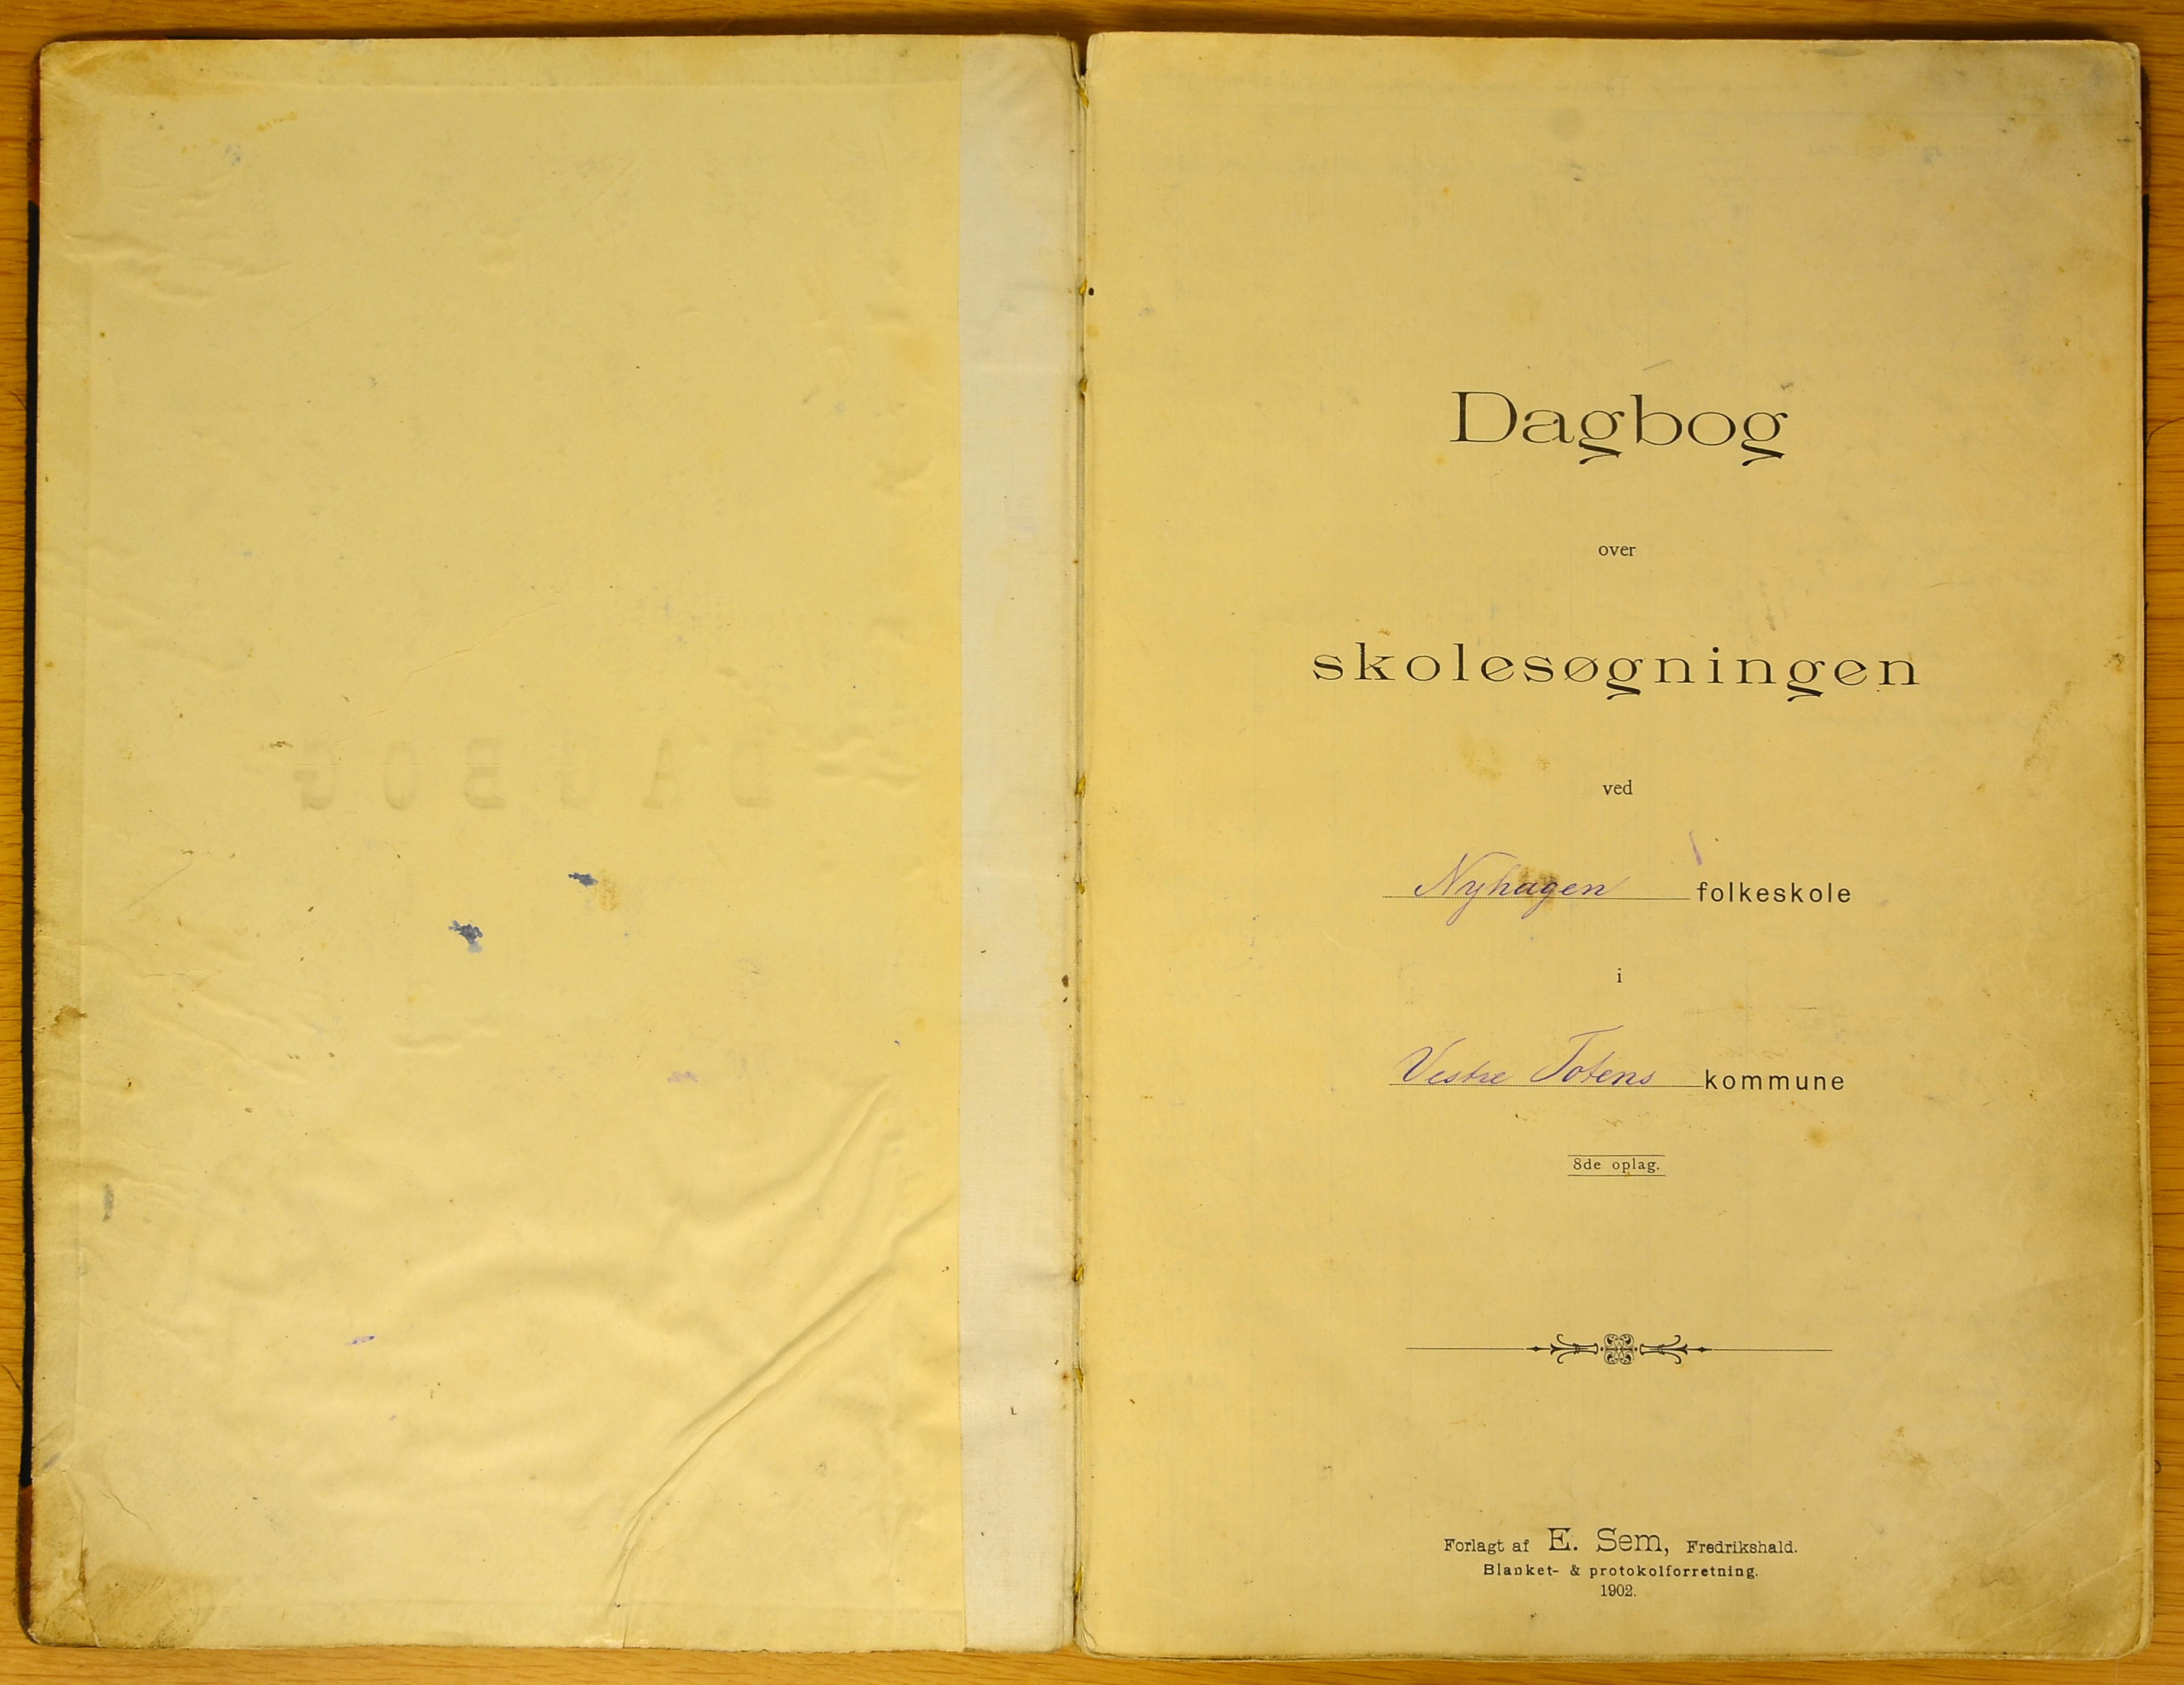 Vestre Toten kommunearkiv*, KVT/-/-/-: Dagbok over skolesøkningen, Nyhagen folkeskole, 1904-1918